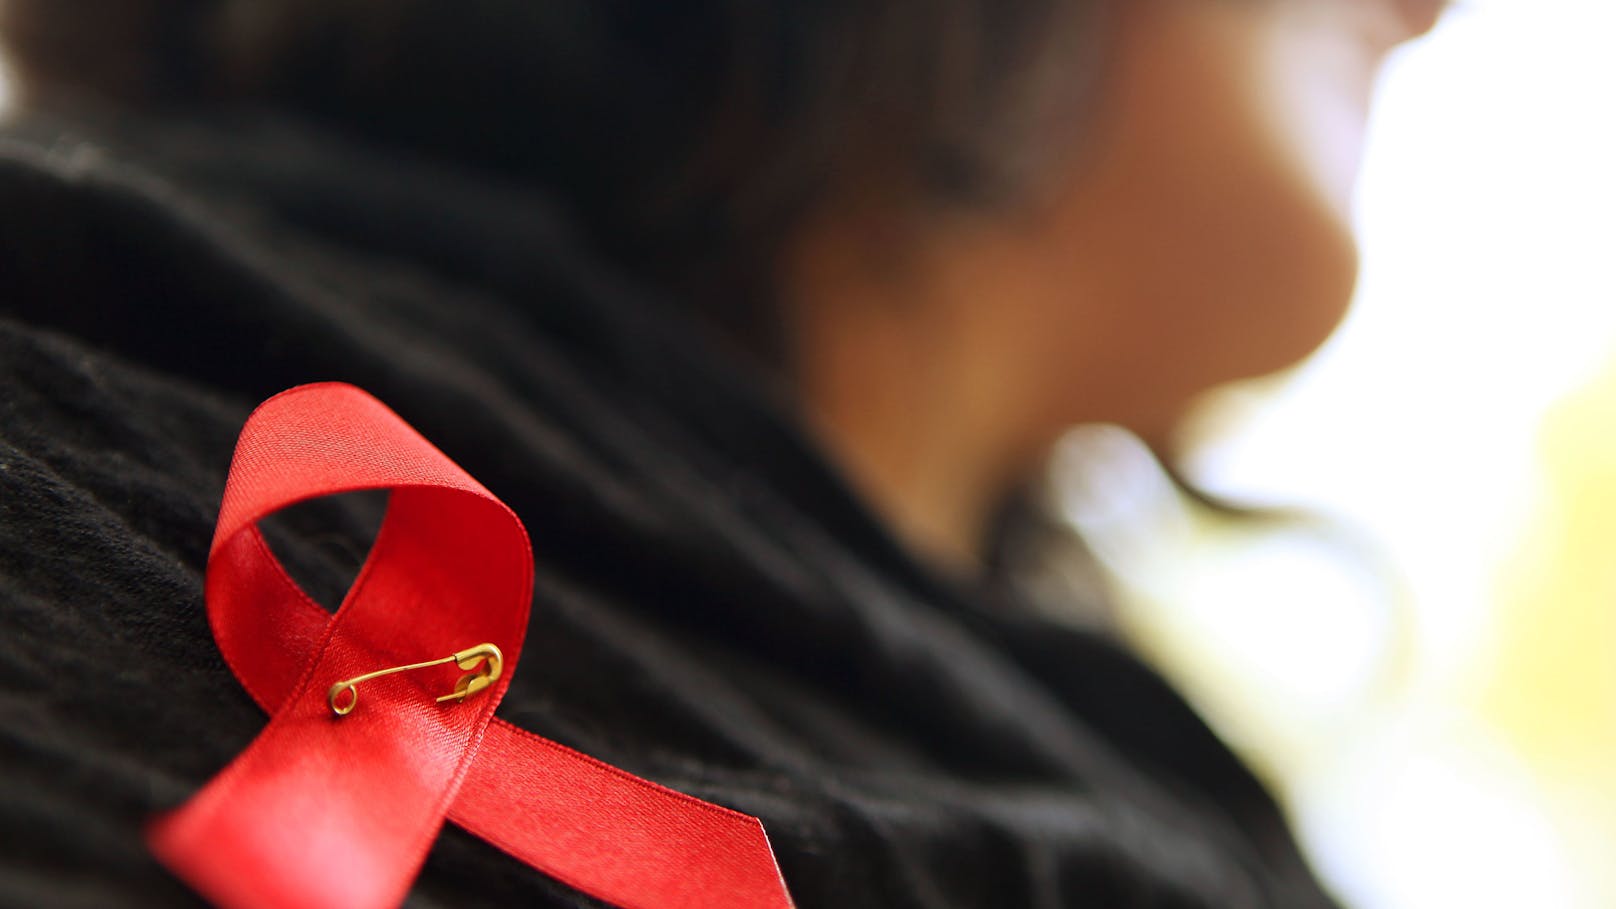 HIV/Aids: Was der Arbeitgeber (nicht) darf